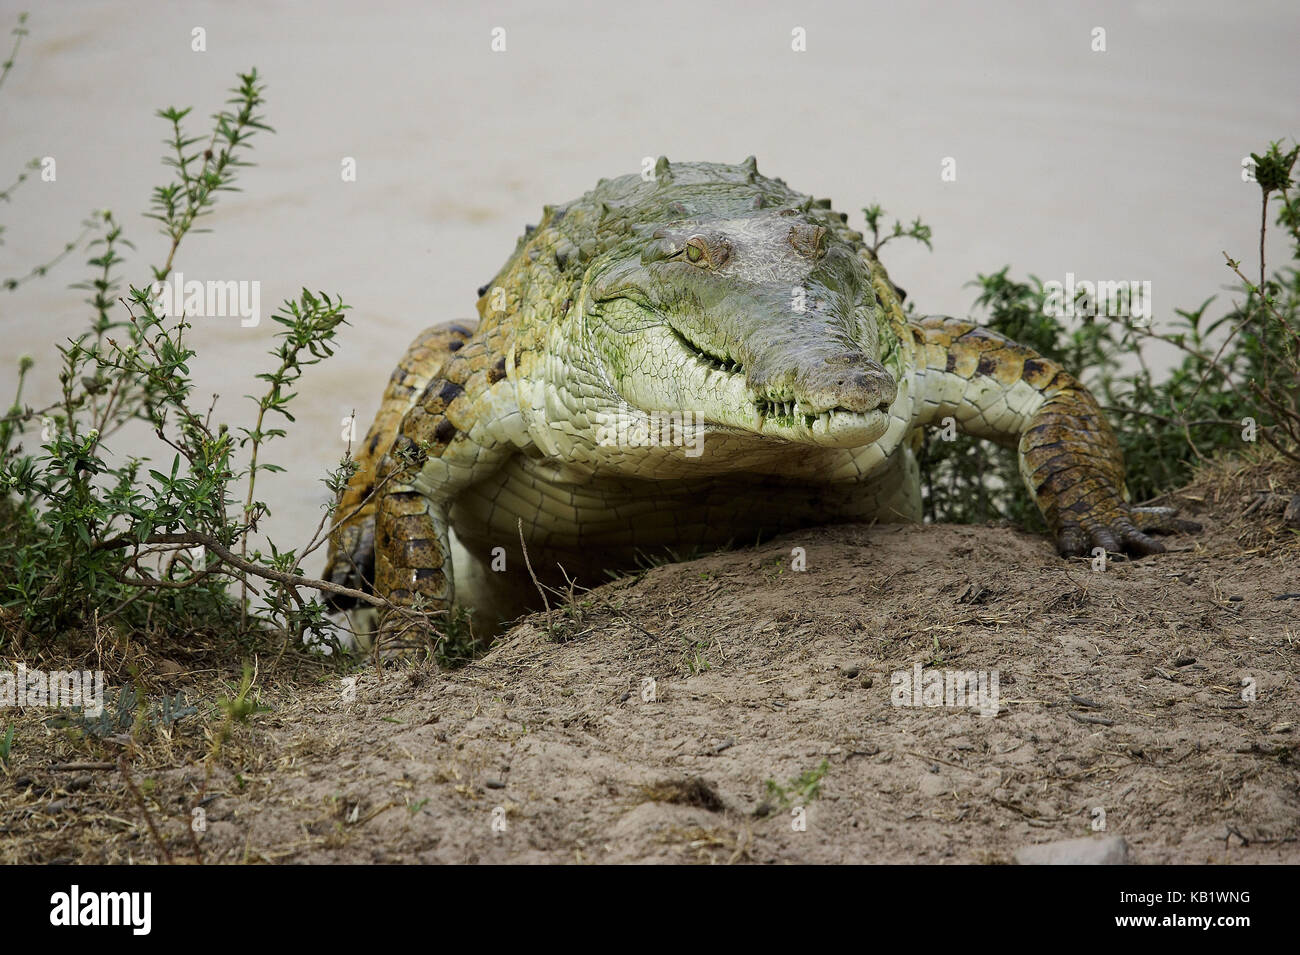 El cocodrilo del Orinoco, Crocodylus intermedius, Riverside, los lianos, venezuela Foto de stock